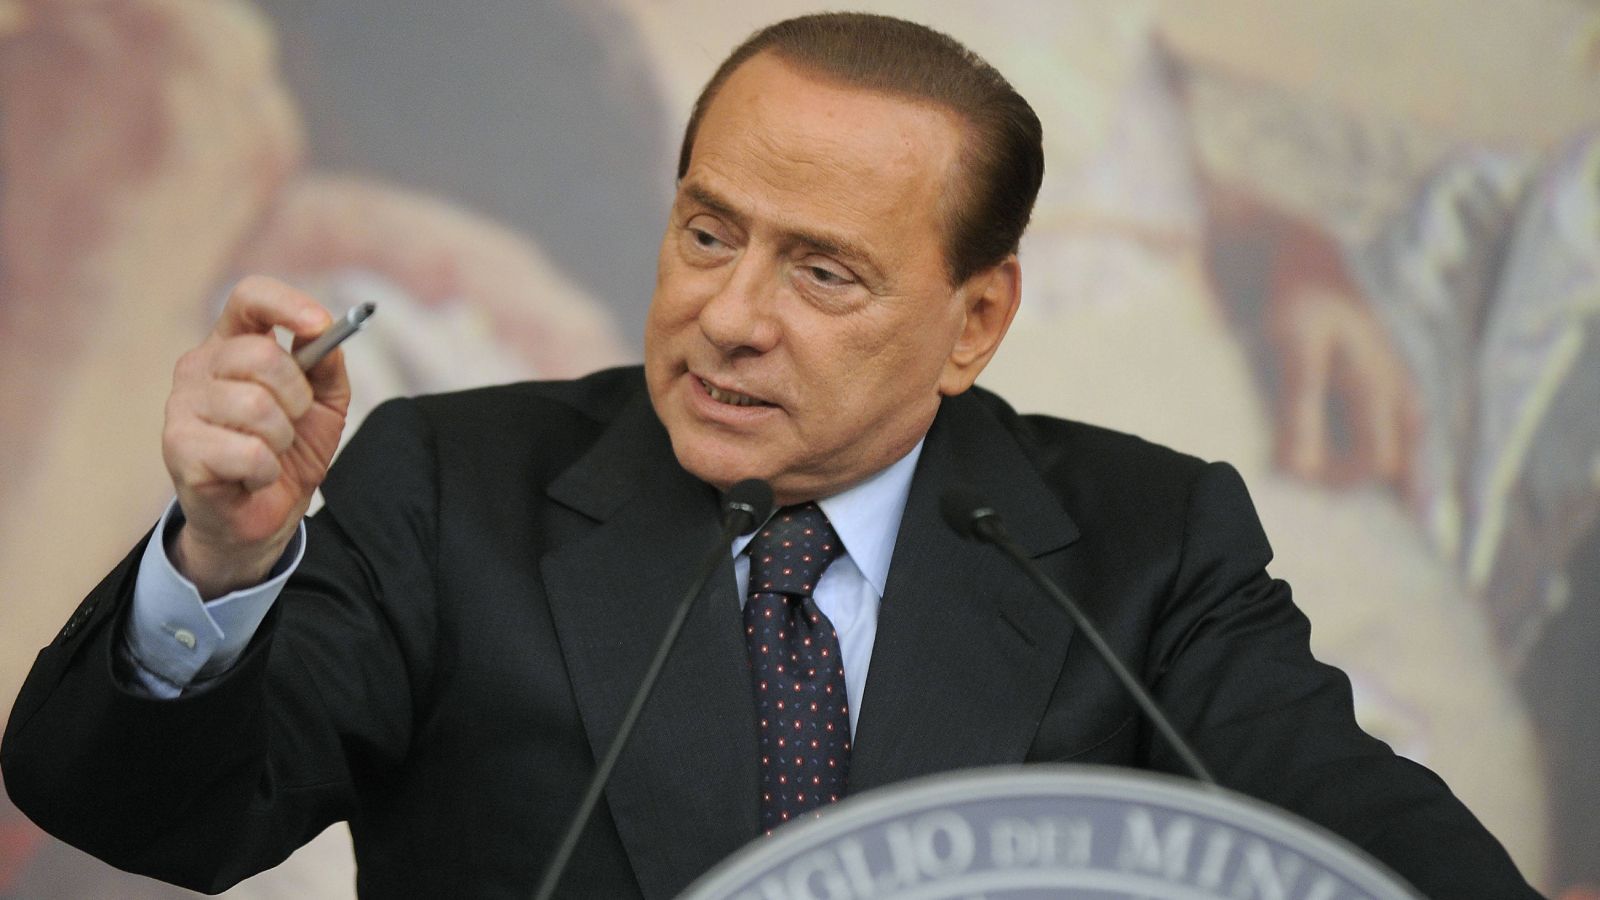 
                <strong>Silvio Berlusconi wird Regierungschef von Italien</strong><br>
                Im Mai gewinnt die Partei "Forza Italia" die Wahlen in Italien. Wenig später wird ihr Vorsitzender, Silvio Berlusconi, zum Regierungschef gewählt. Heute erinnert man sich weniger an Berlusconis politische Verdienste als vielmehr an seine ausgelassenen Feiern mit leicht bis gar nicht bekleideten Frauen.
              